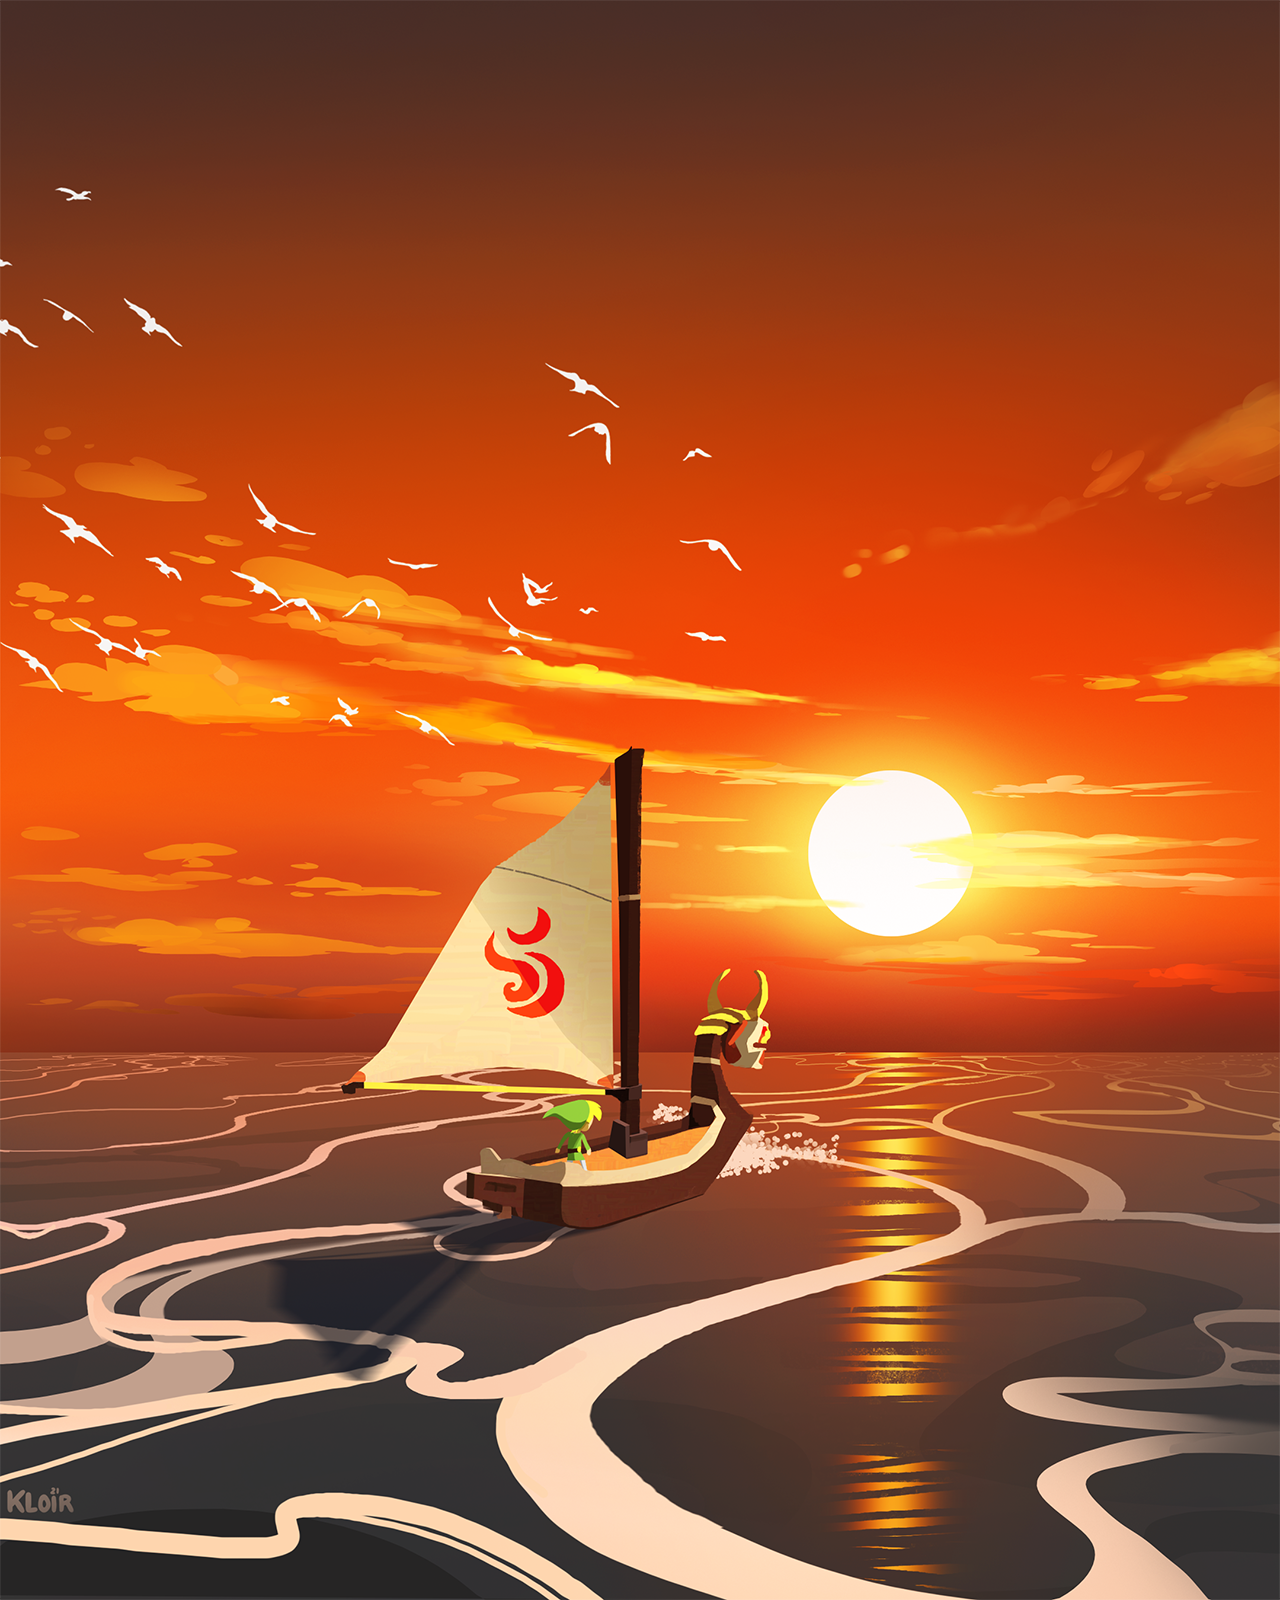 Link Sunset Boat Sailing The Legend Of Zelda The Legend Of Zelda Wind Waker Seagulls King Of Red Lio 1280x1600